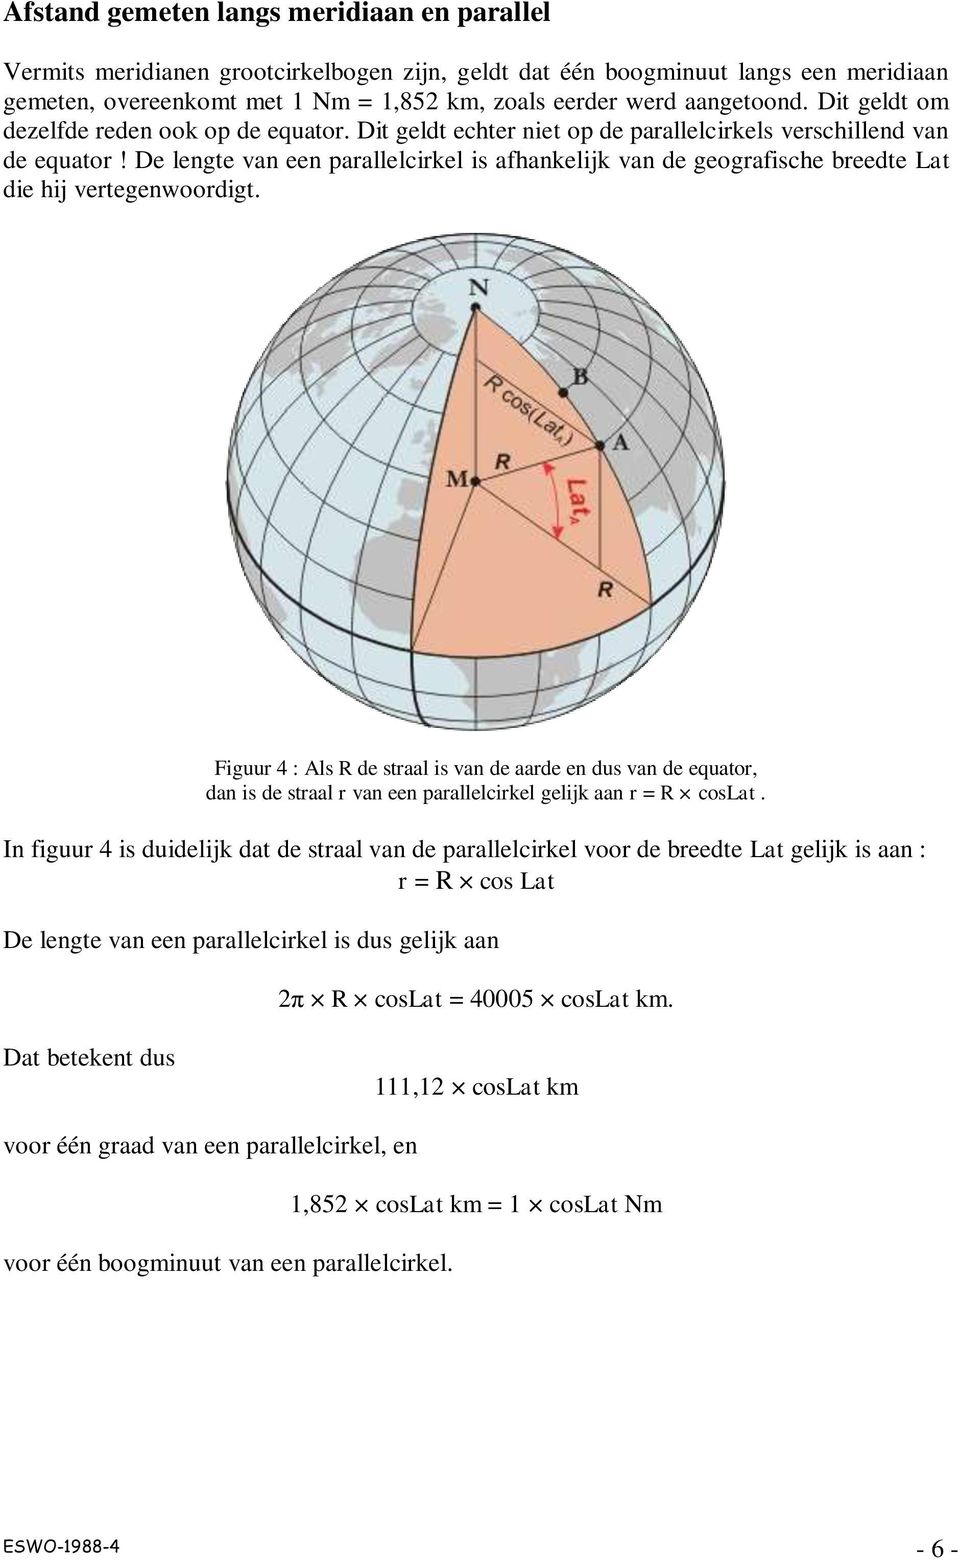 De lengte van een parallelcirkel is afhankelijk van de geografische breedte Lat die hij vertegenwoordigt.